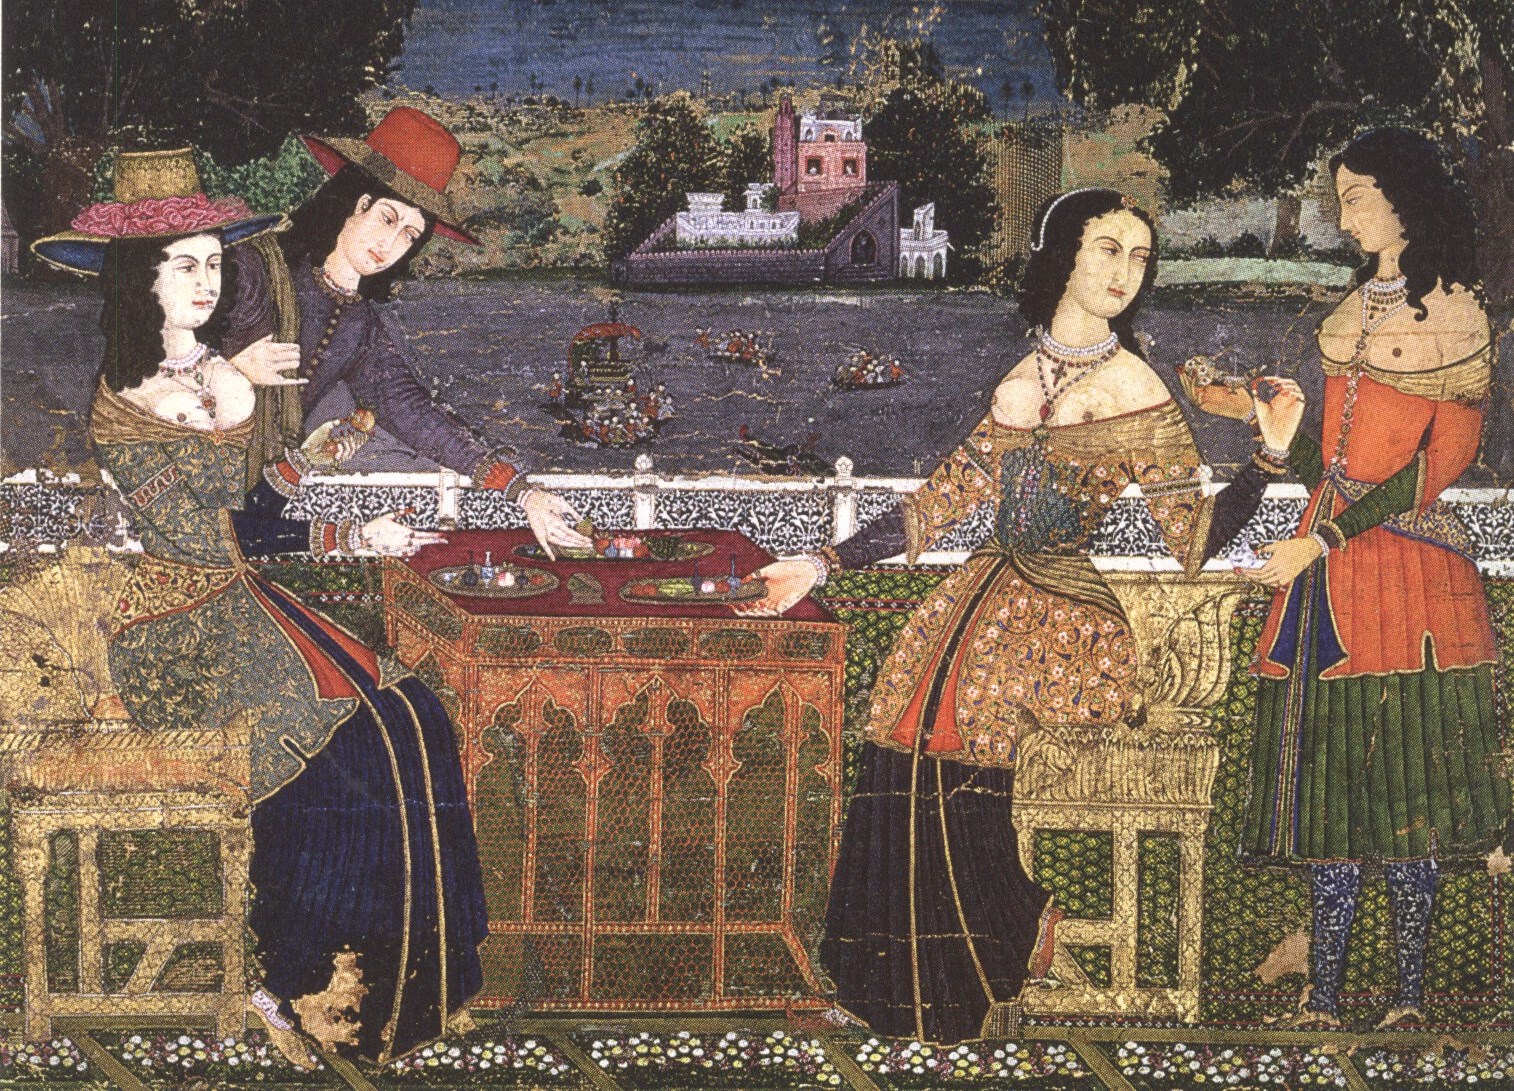 Леонардо да Винчи. "Сердечно-сосудистая система и основные органы женщины". Около 1509-1510. Королевское собрание, Англия.